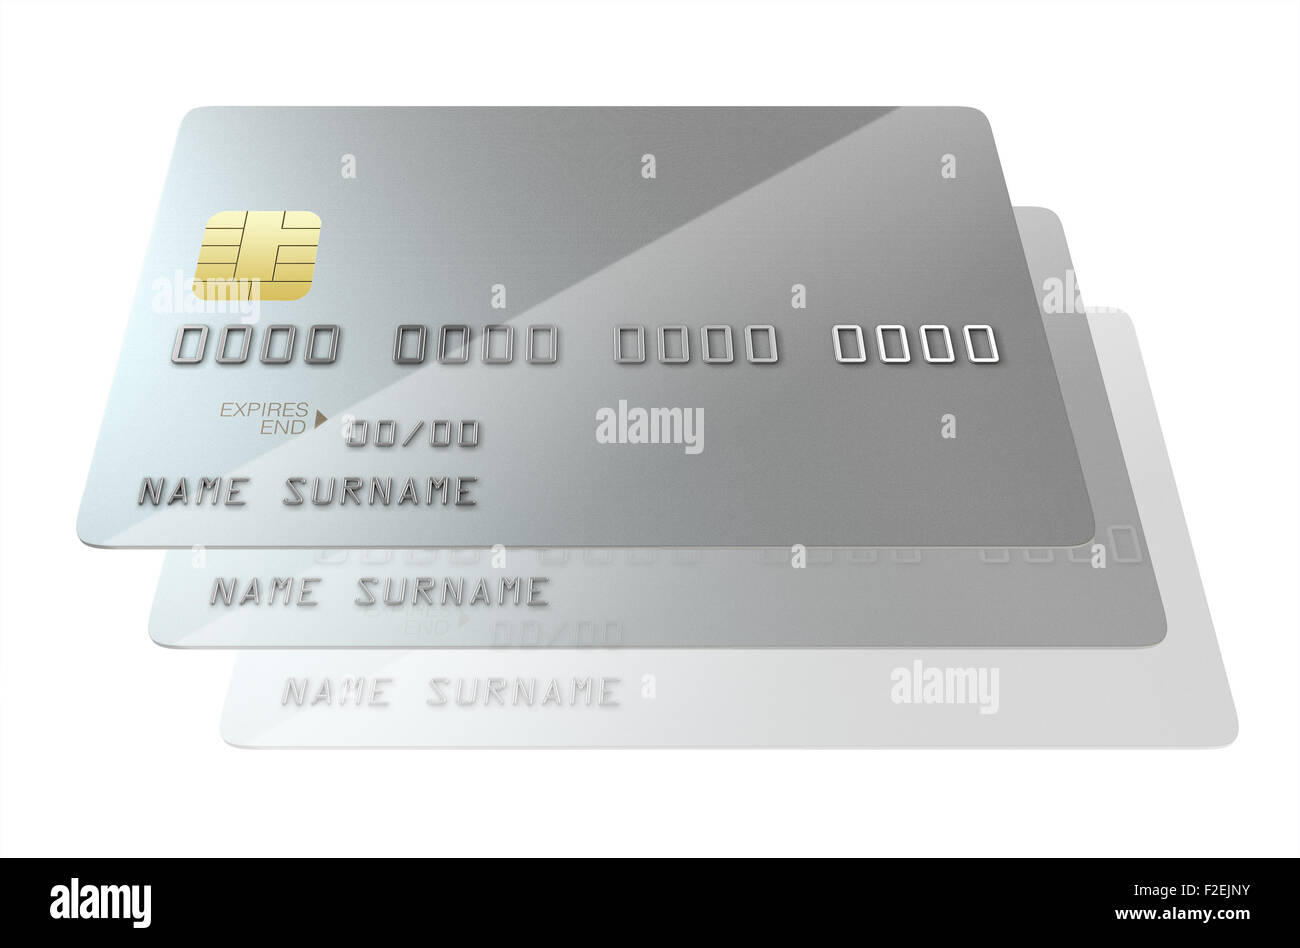 Una visión más cercana de una serie de plata blanco genérico significando la clonación de tarjetas de crédito del banco sobre un fondo blanco aislado studio Foto de stock